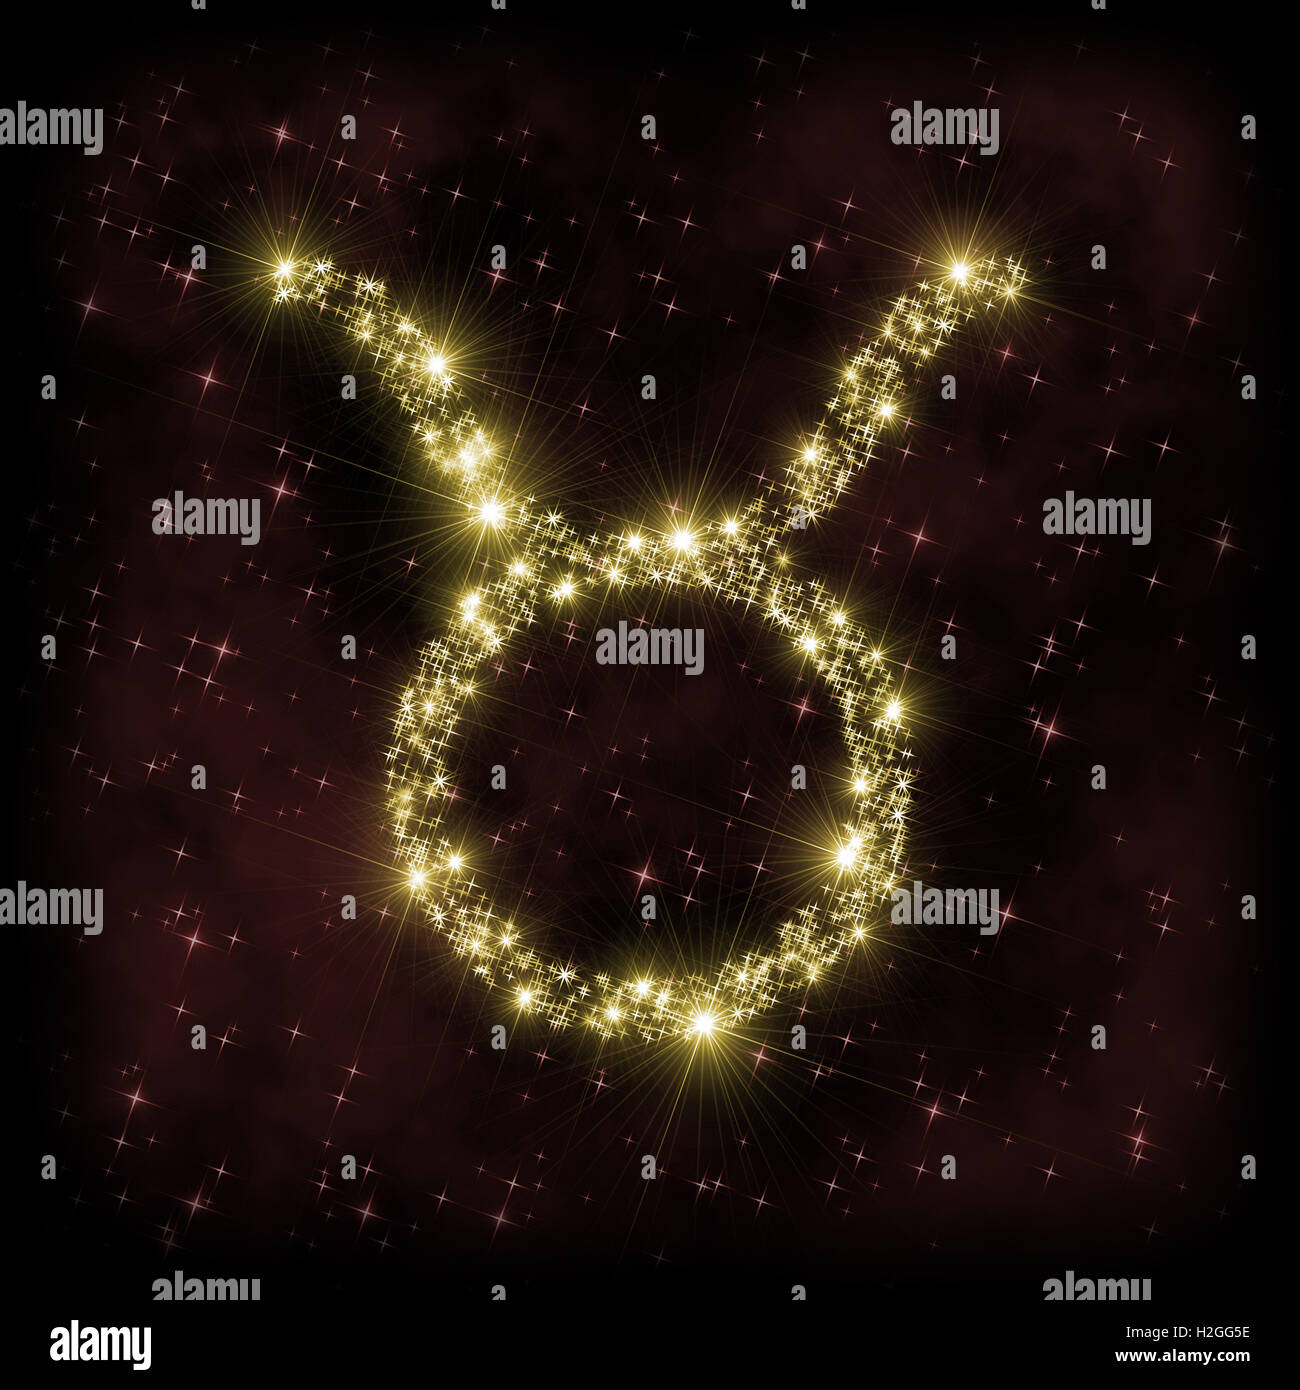 Taurus segno Zodiak - astronomia o astrologia illustrazione in cui il simbolo corrispondente alla costellazione fatta di stelle scintillanti Foto Stock